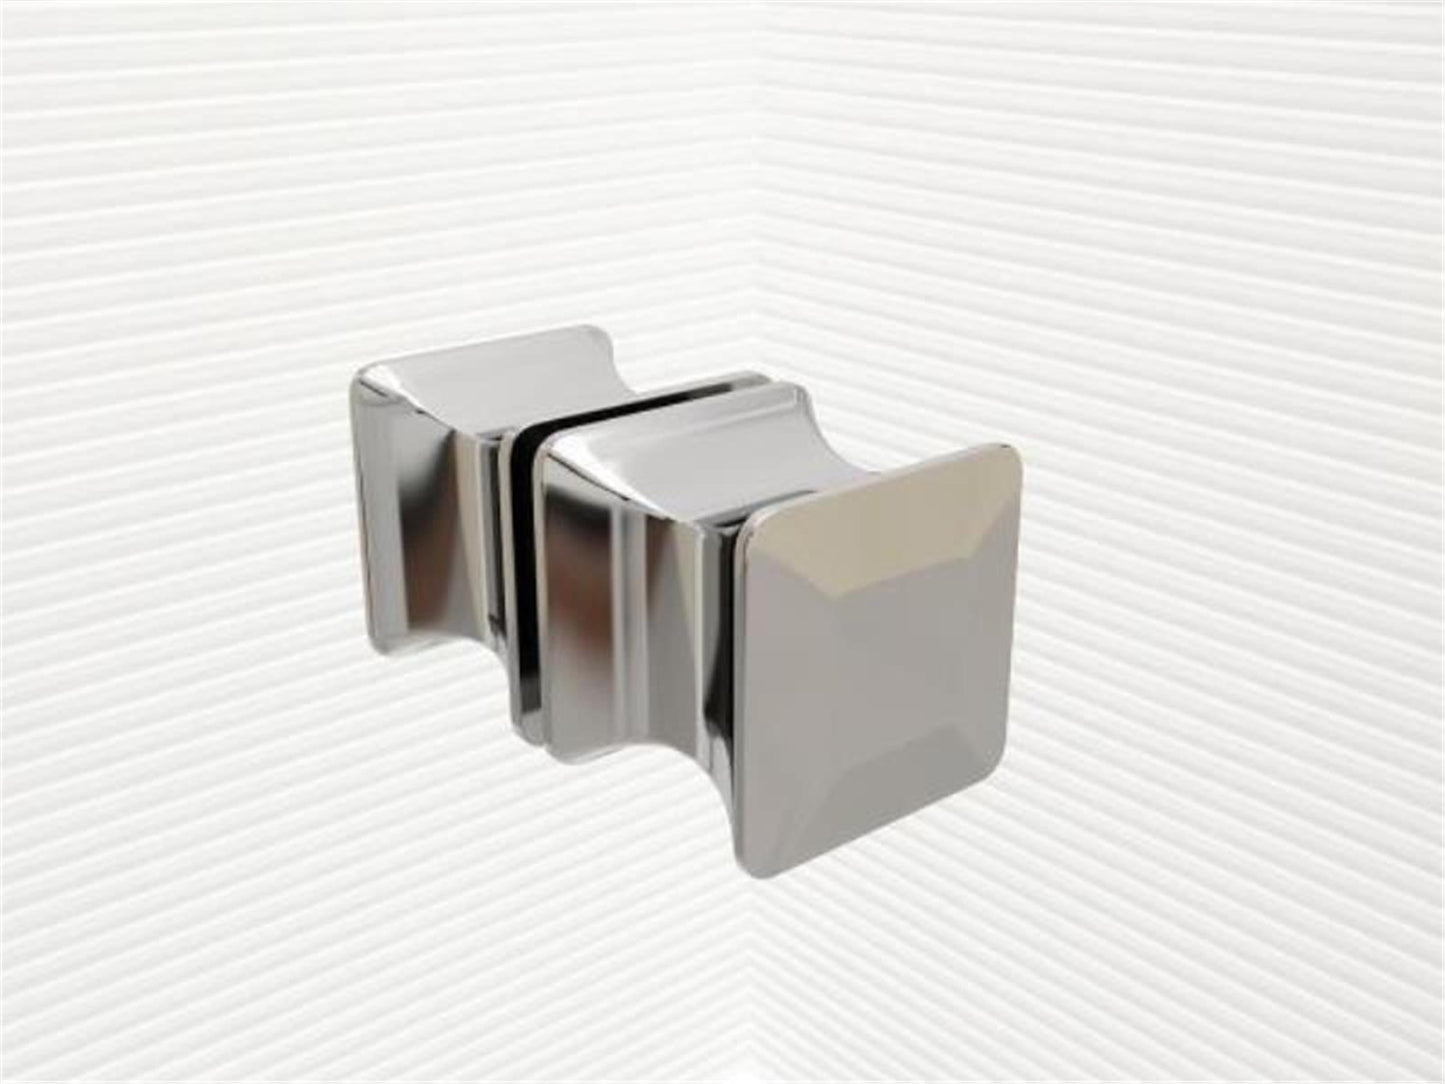 GlasHomeCenter - U-Duschkabine "Asuka" (90x90x180cm) - 8mm - Eckduschkabine - Duschabtrennung - ohne Duschtasse